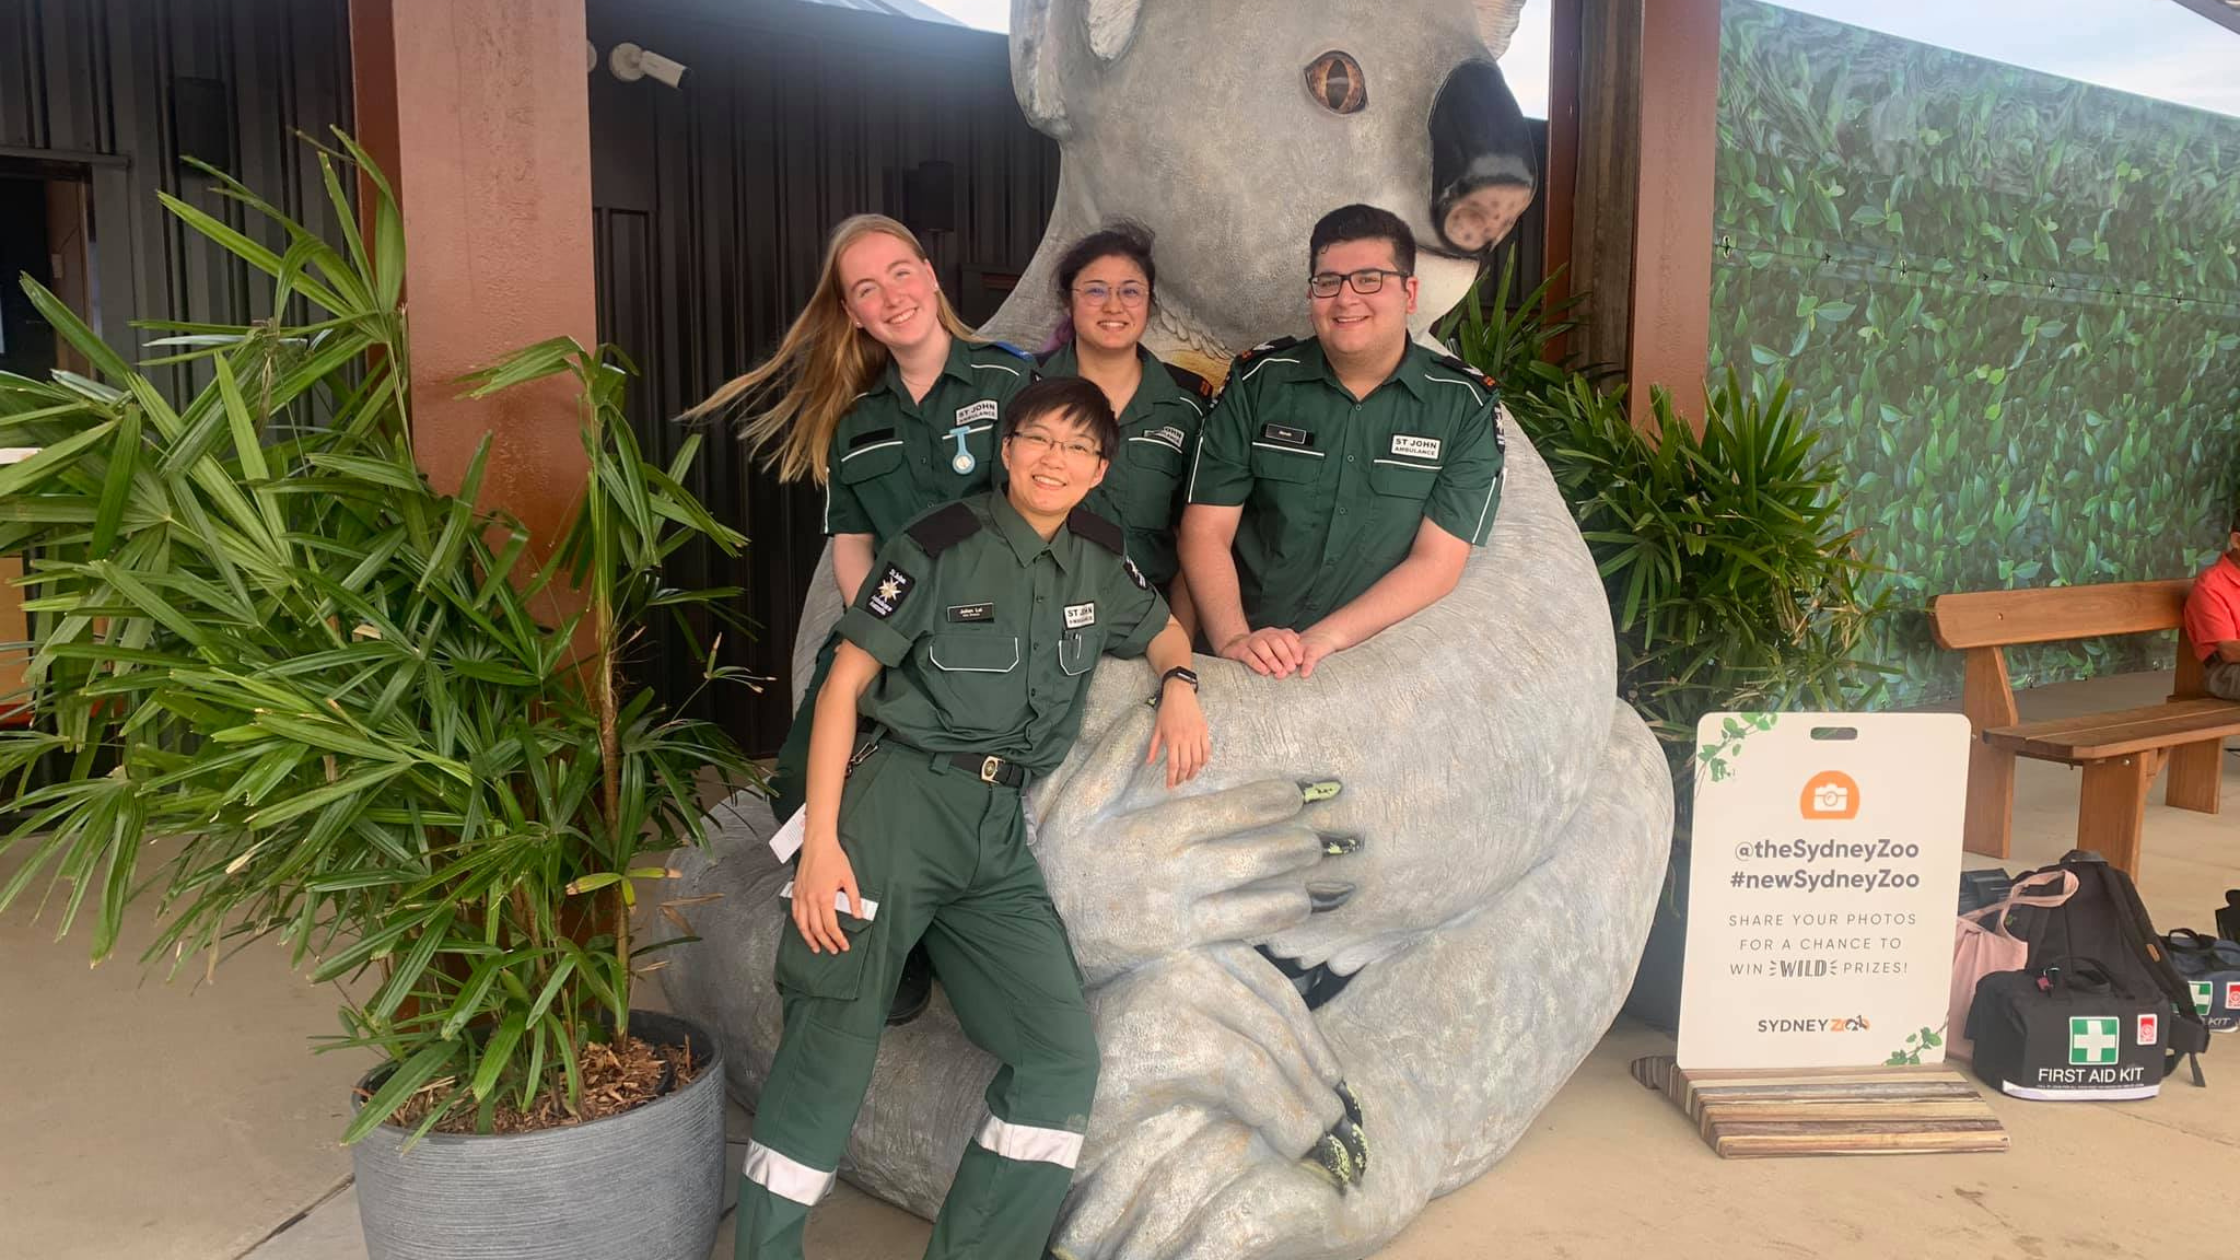 Sydney Zoo partners with St John Ambulance NSW